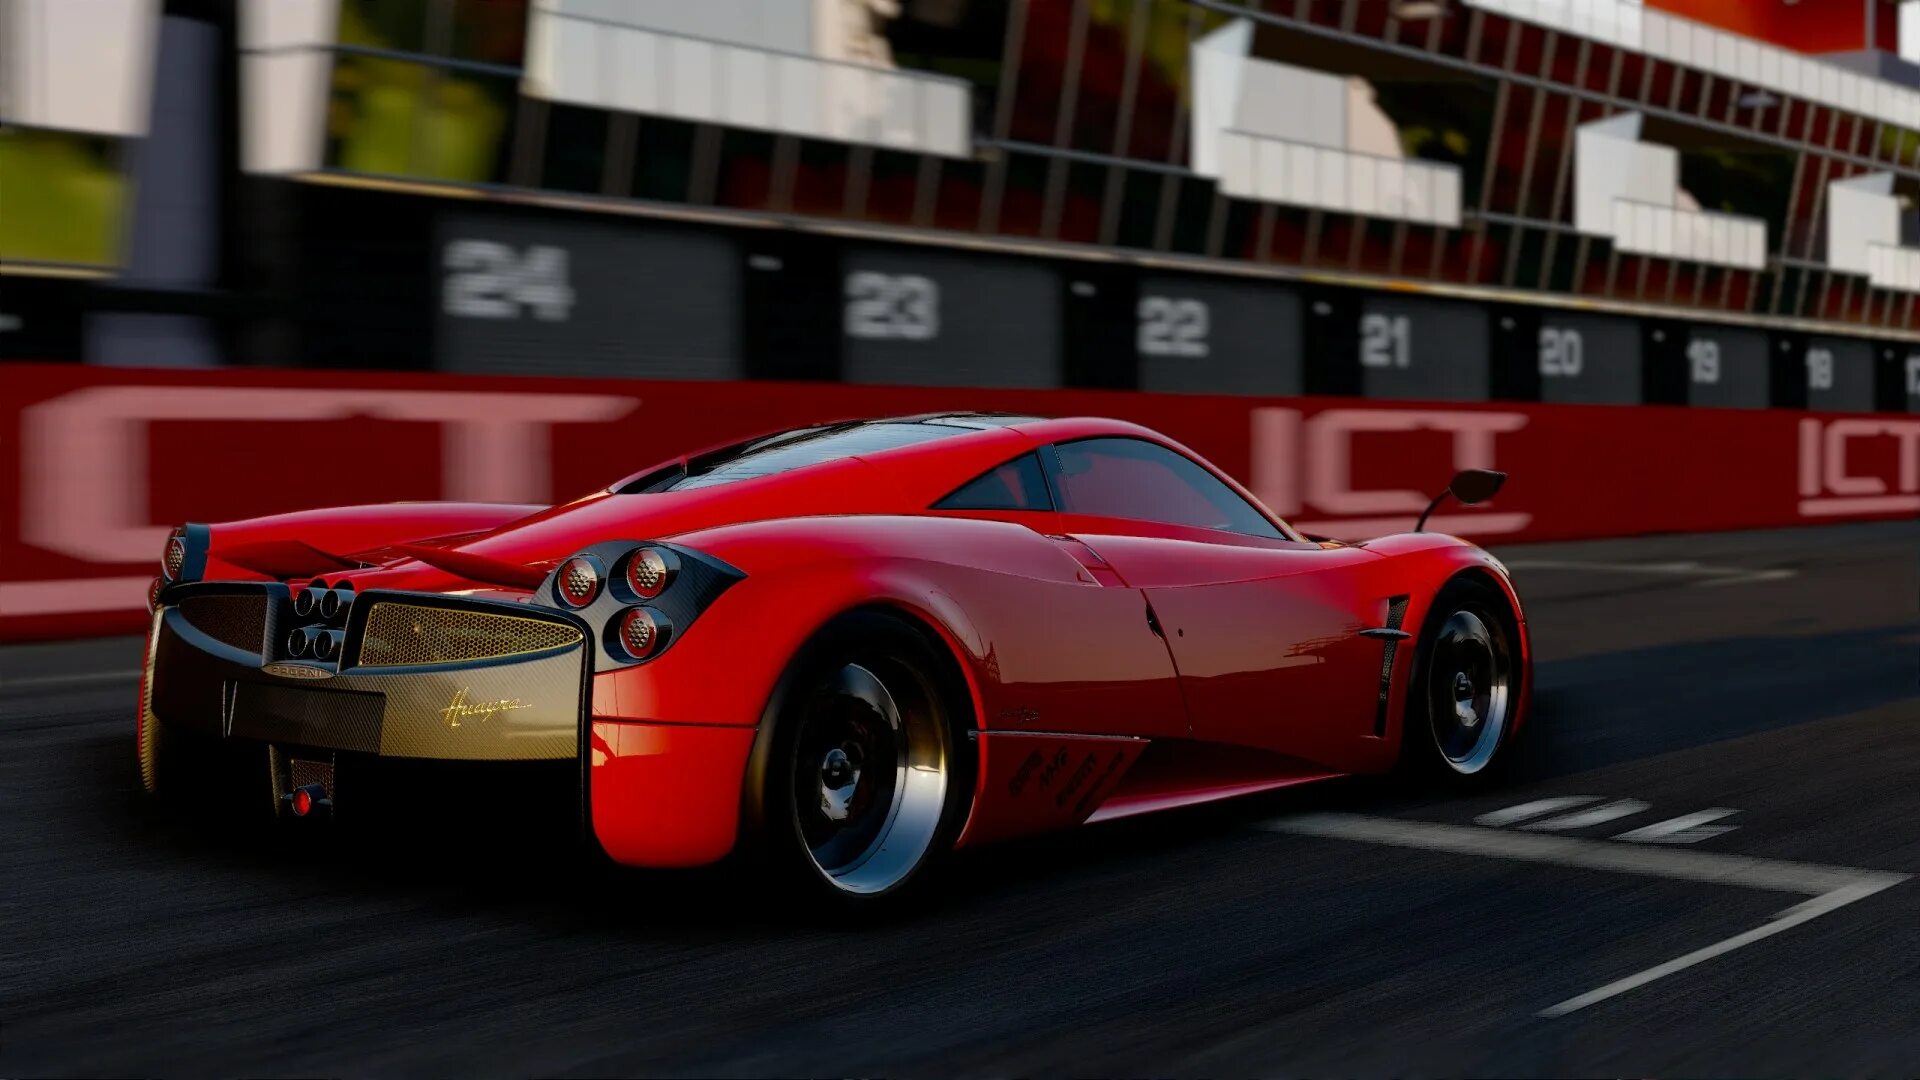 Ferrari race legends. Игра гонки Test Drive Ferrari. Тест драйв Феррари игра. Test Drive Ferrari Racing Legends lags. Project cars - Pagani Edition.